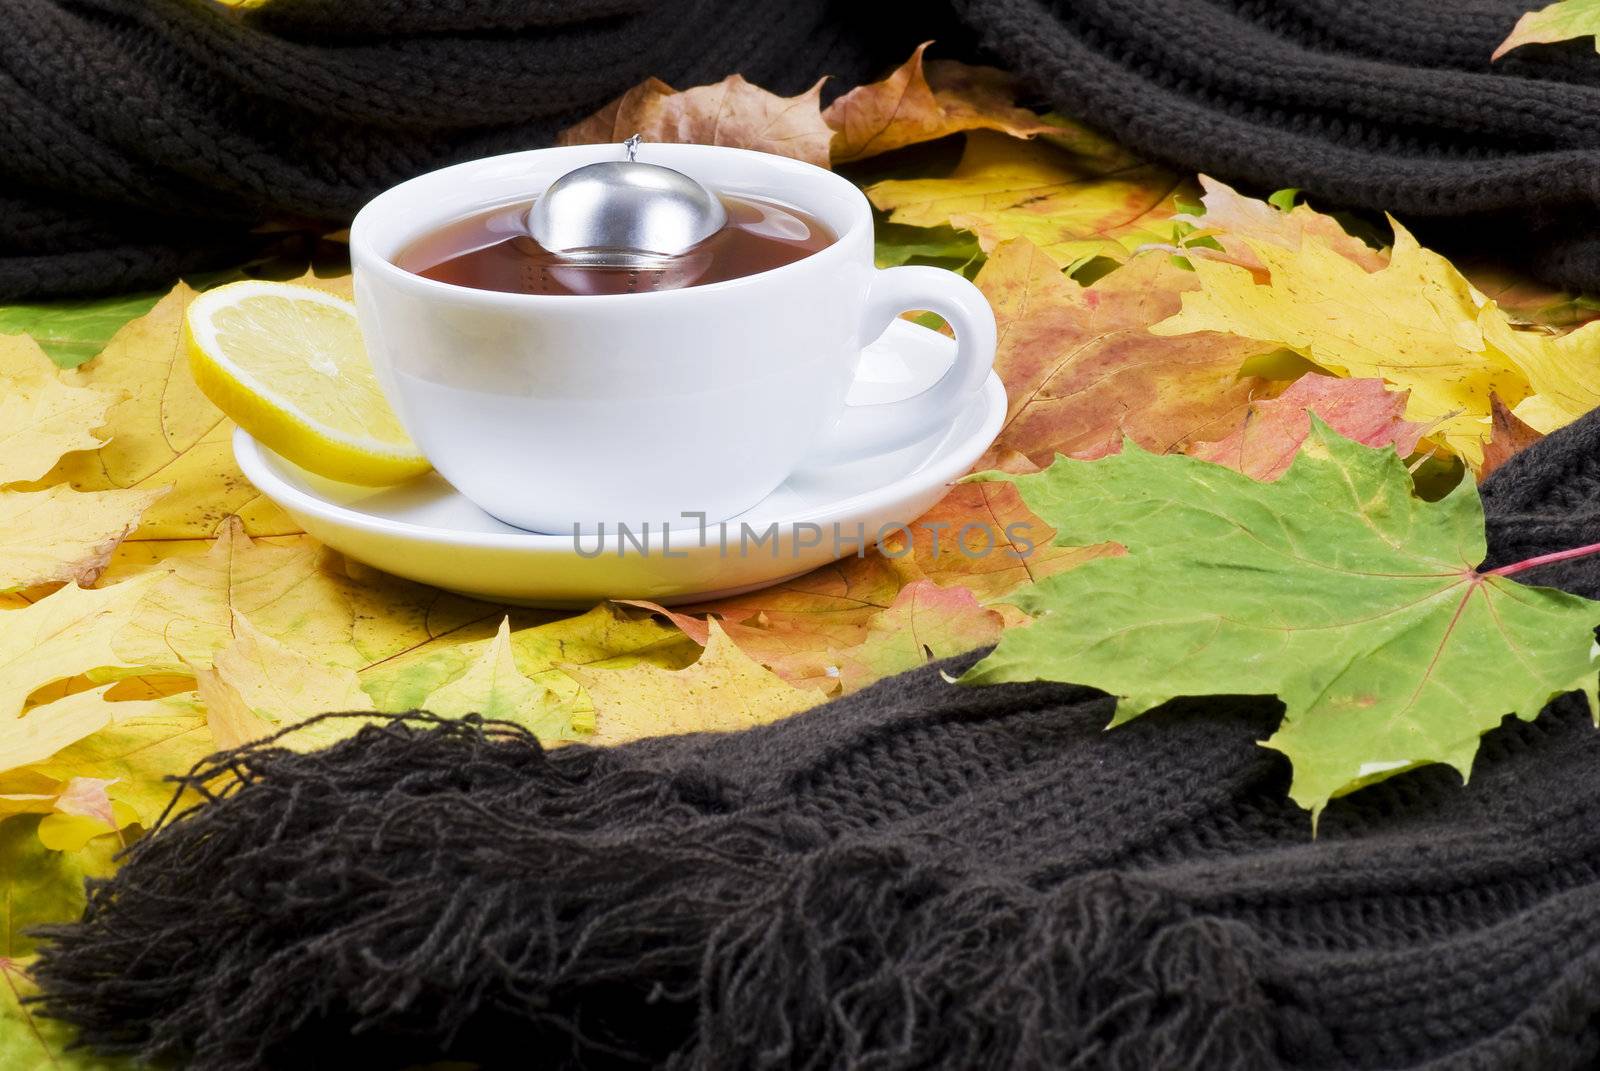 Autumn tea by caldix